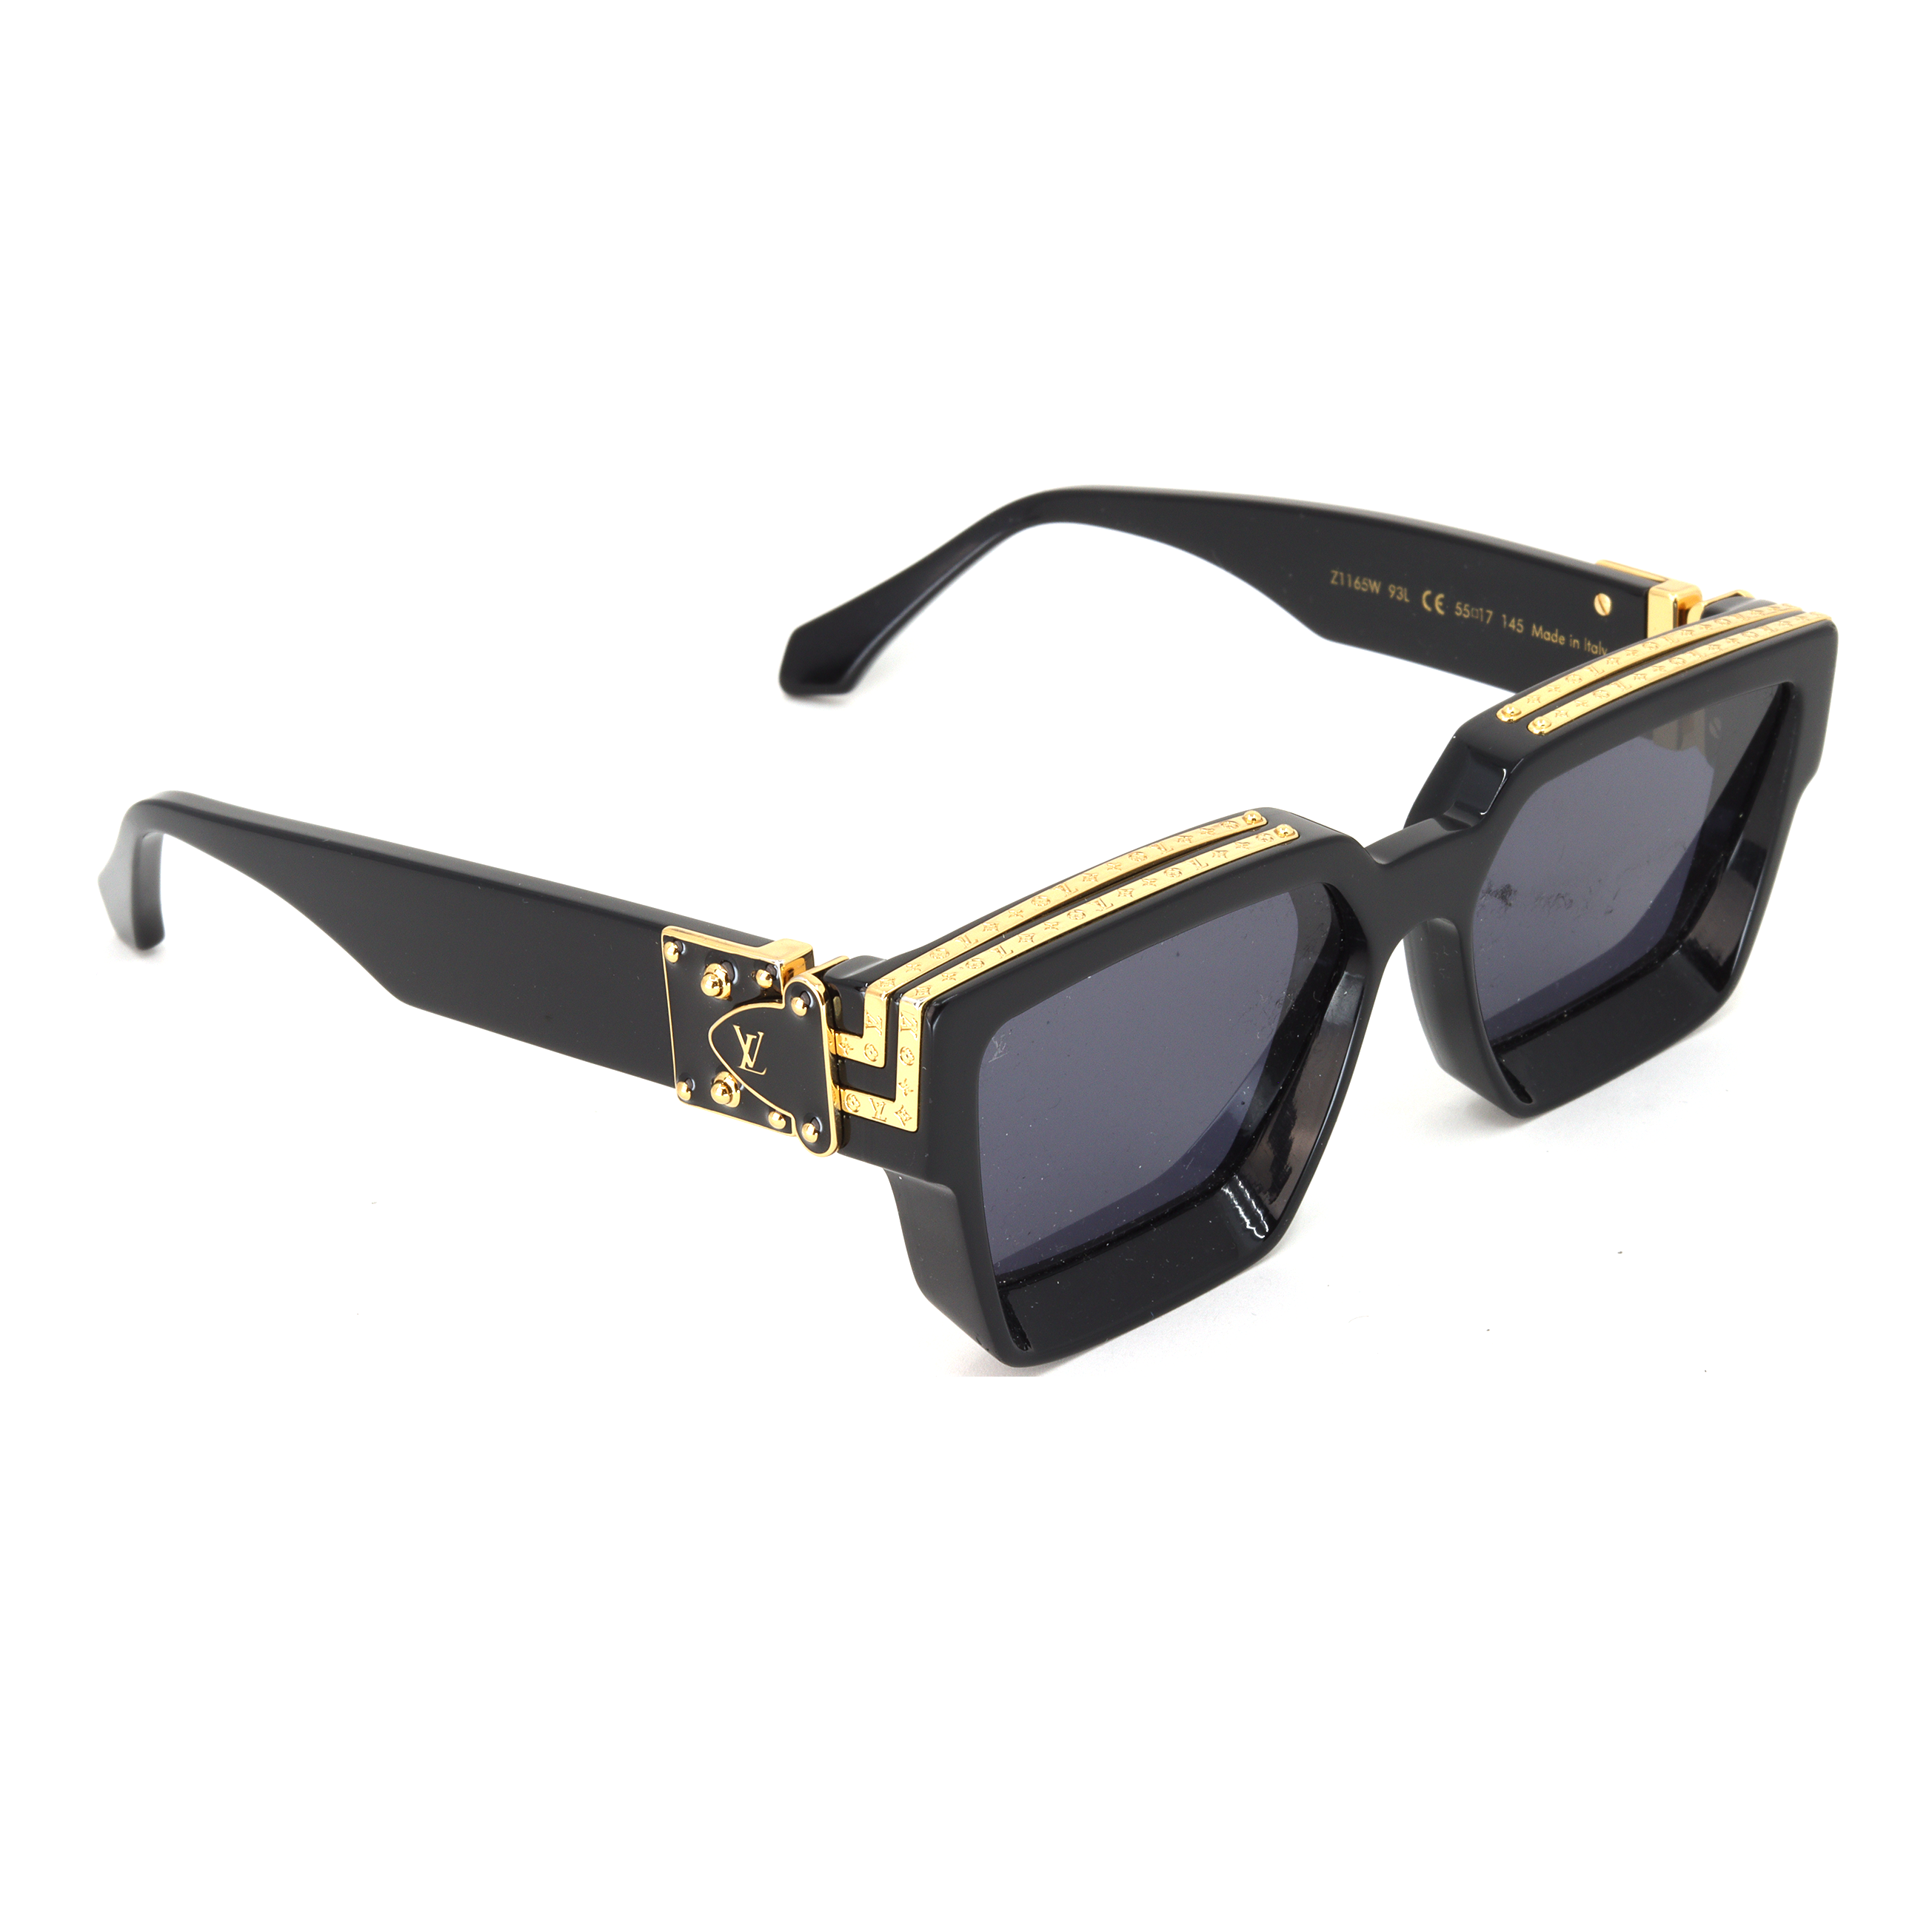 NEW Louis Vuitton Transparent Millionaire Sunglasses — Collecting